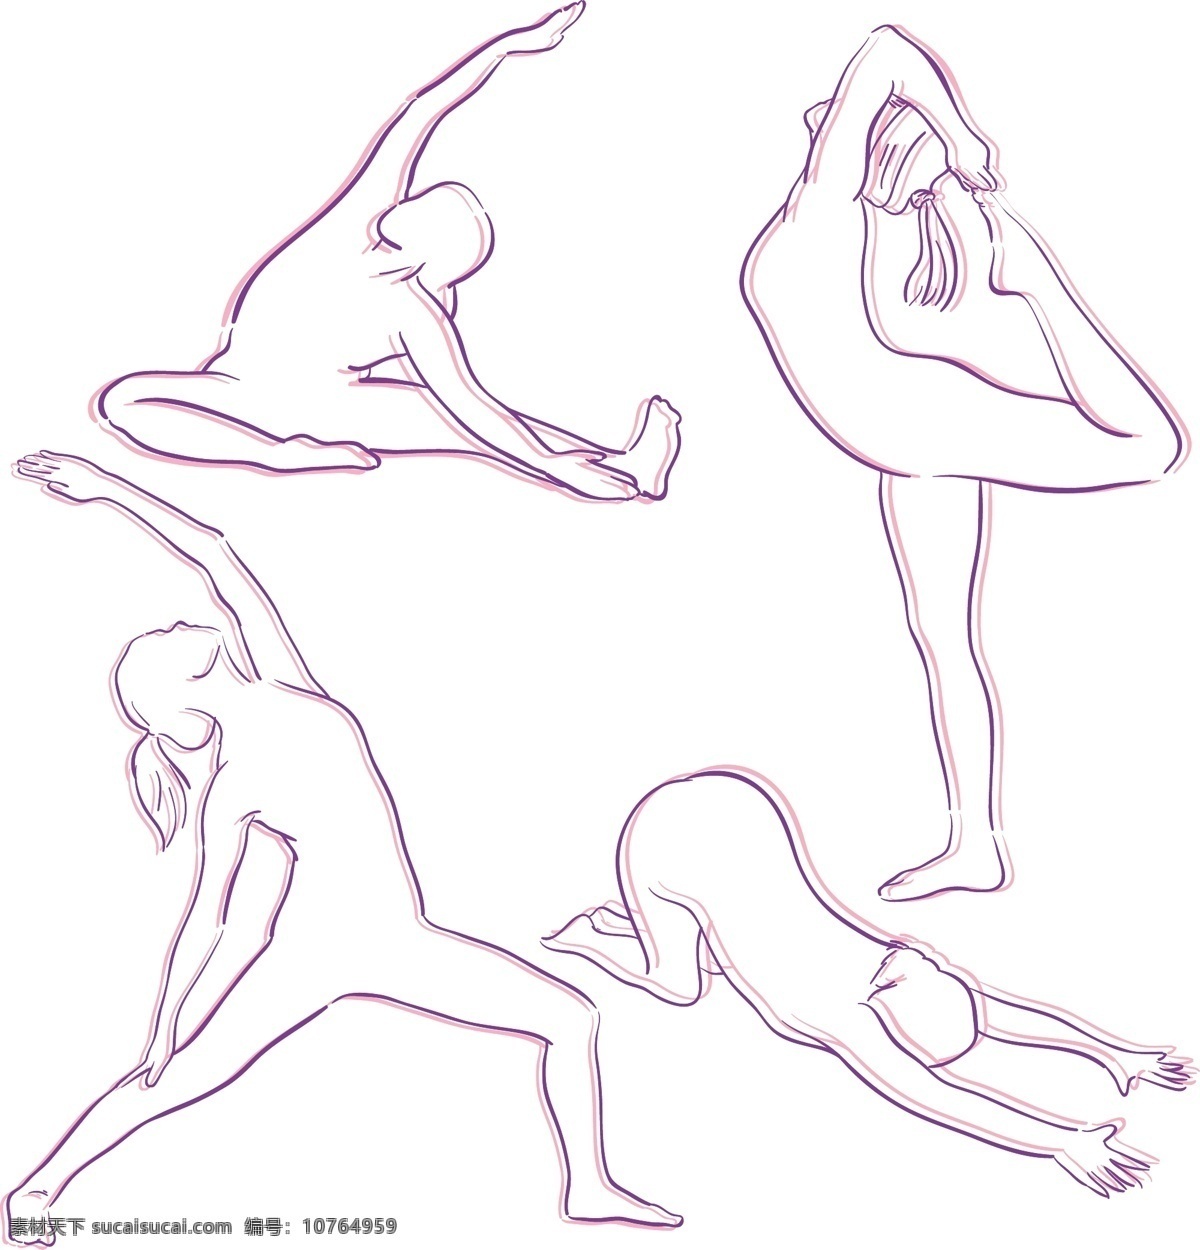 紫色 瑜伽 姿势 剪影 保健 可爱的 人 和平 健康 运动 平衡 头脑 人类 身体 放松 生活方式 位置 灵活性 提出 最新矢量素材